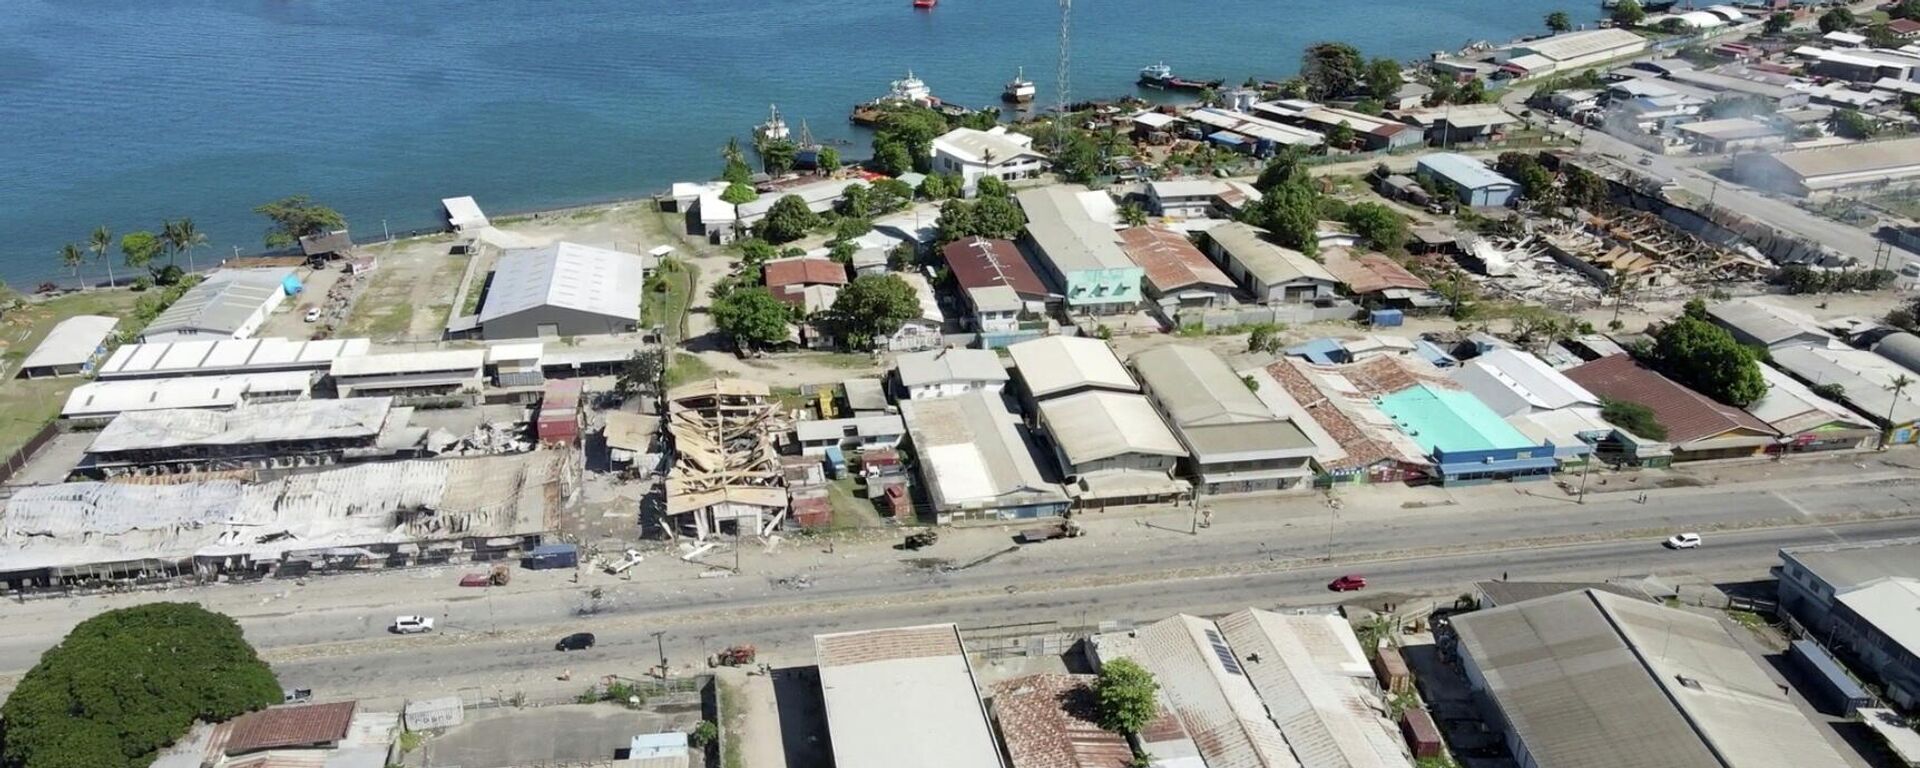 مباني مدمرة بعد أيام من الاضطرابات في هونيارا، جزر سليمان، 27 نوفمبر/ تشرين الثاني 2021 - سبوتنيك عربي, 1920, 24.04.2022